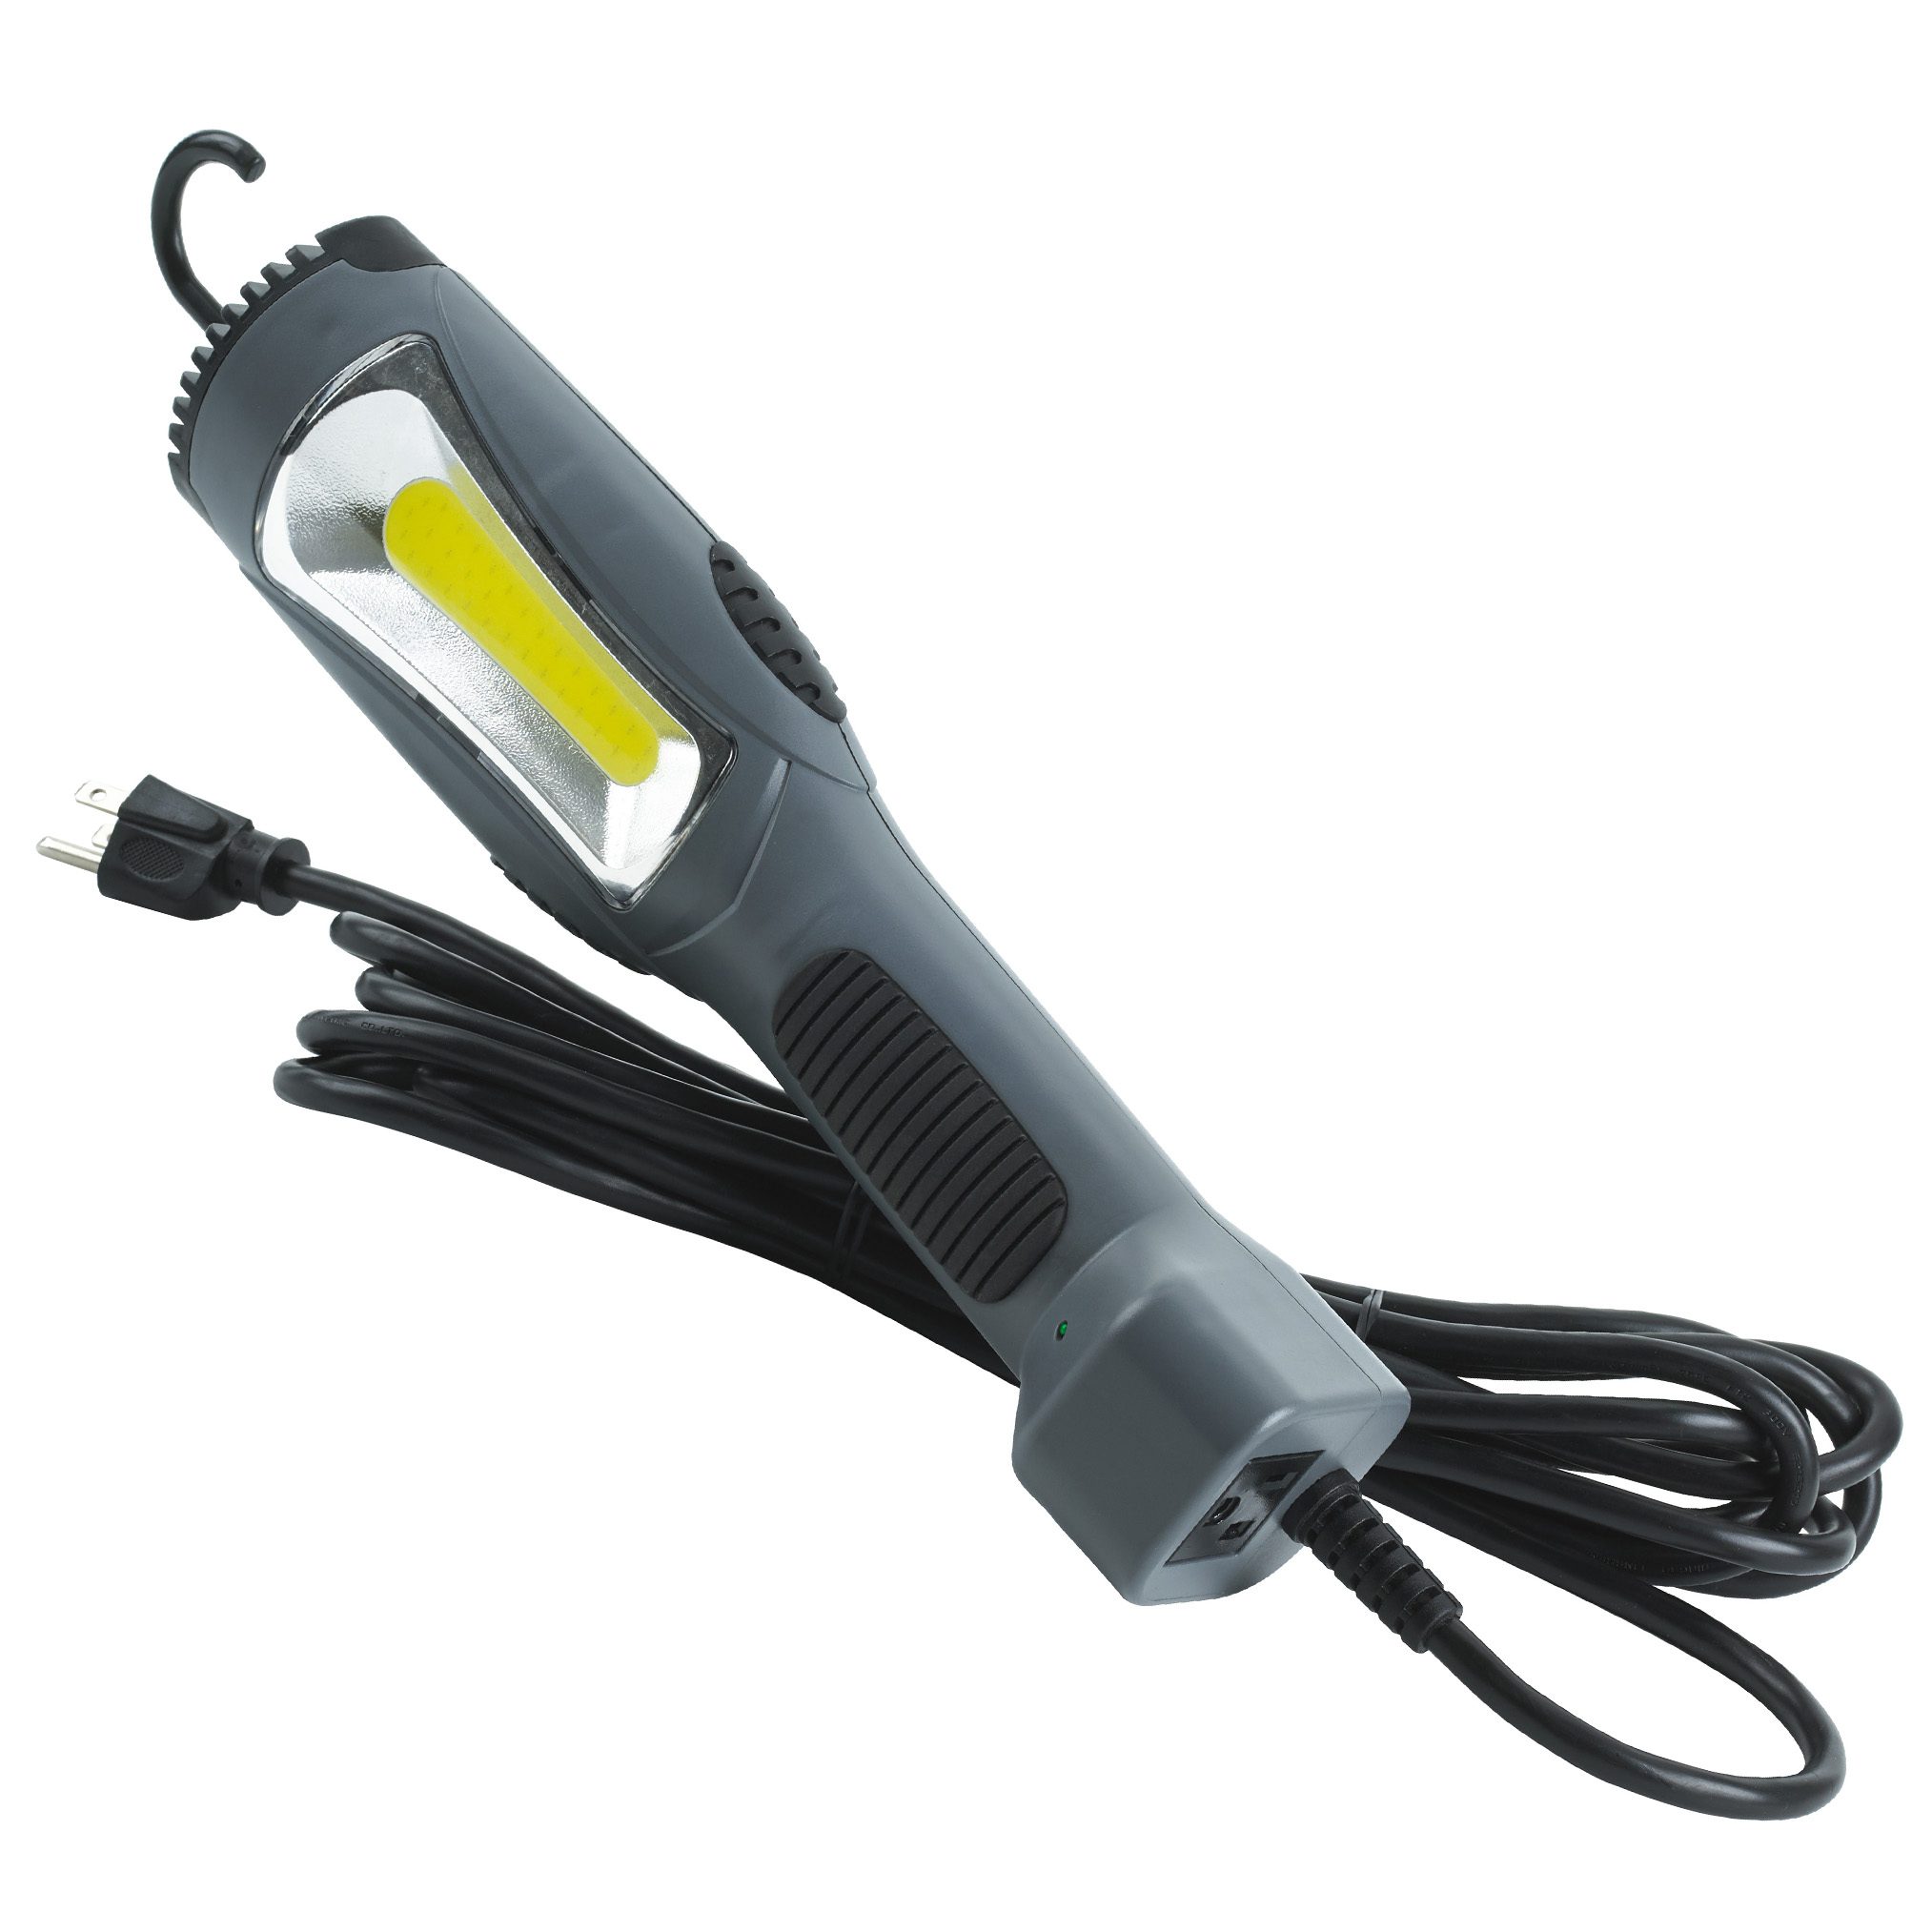 LED-Arbeitsscheinwerfer | 12V | 9x3W | 1500 Lumen | schwenkbar | eckig |  Kunststoff